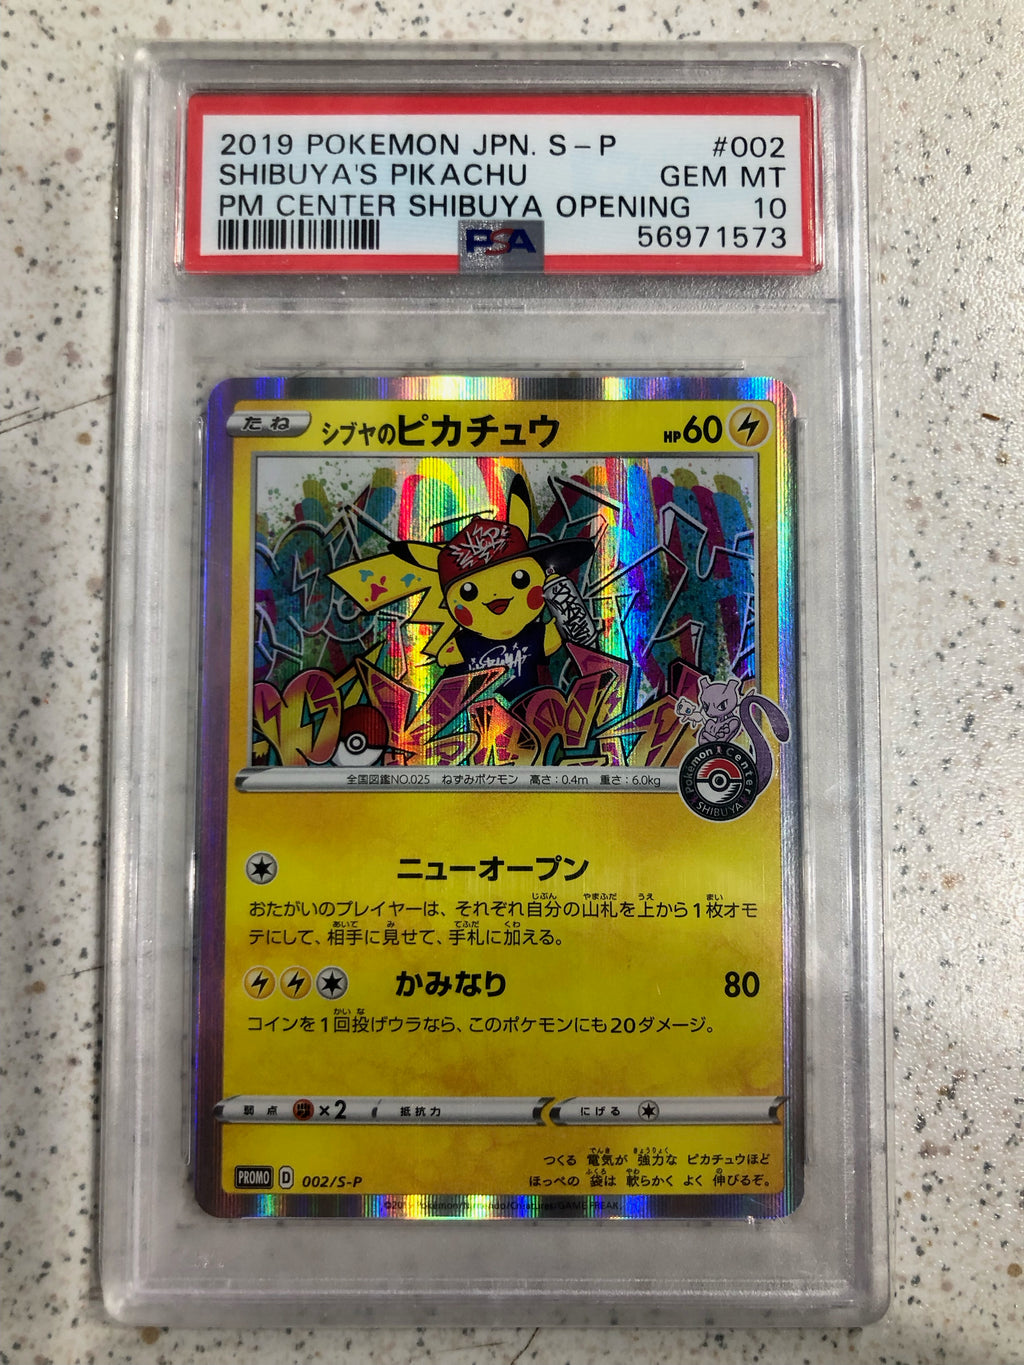 Carte Pokémon Pikachu Kanazawa PROMO 144/S-P